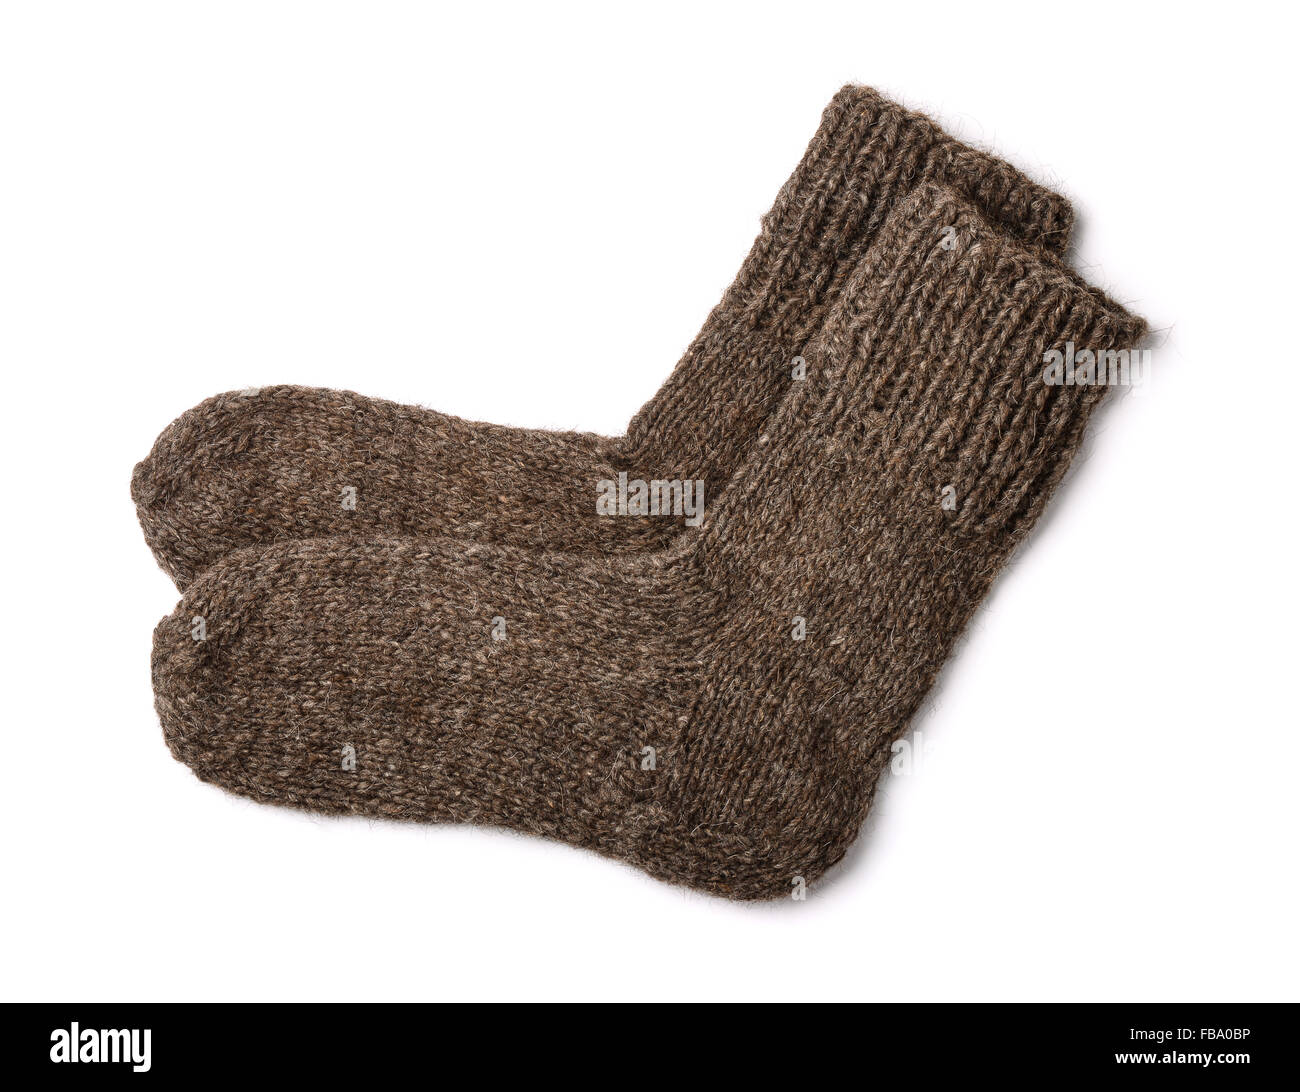 Des chaussettes de laine isolated on white Banque D'Images